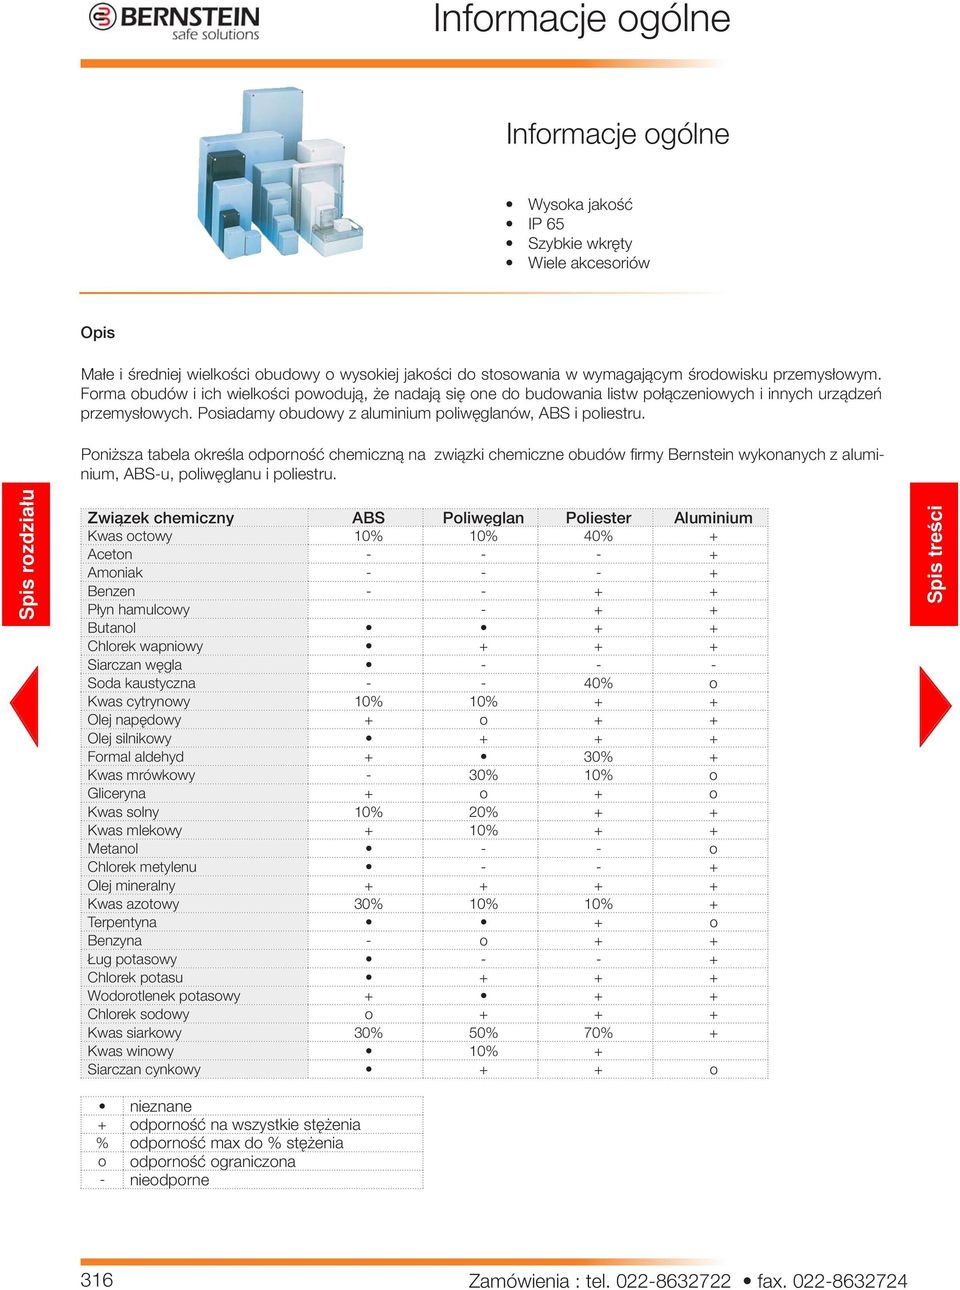 Poniższa tabela określa odporność chemiczną na związki chemiczne obudów fi rmy Bernstein wykonanych z aluminium, ABS-u, poliwęglanu i poliestru.